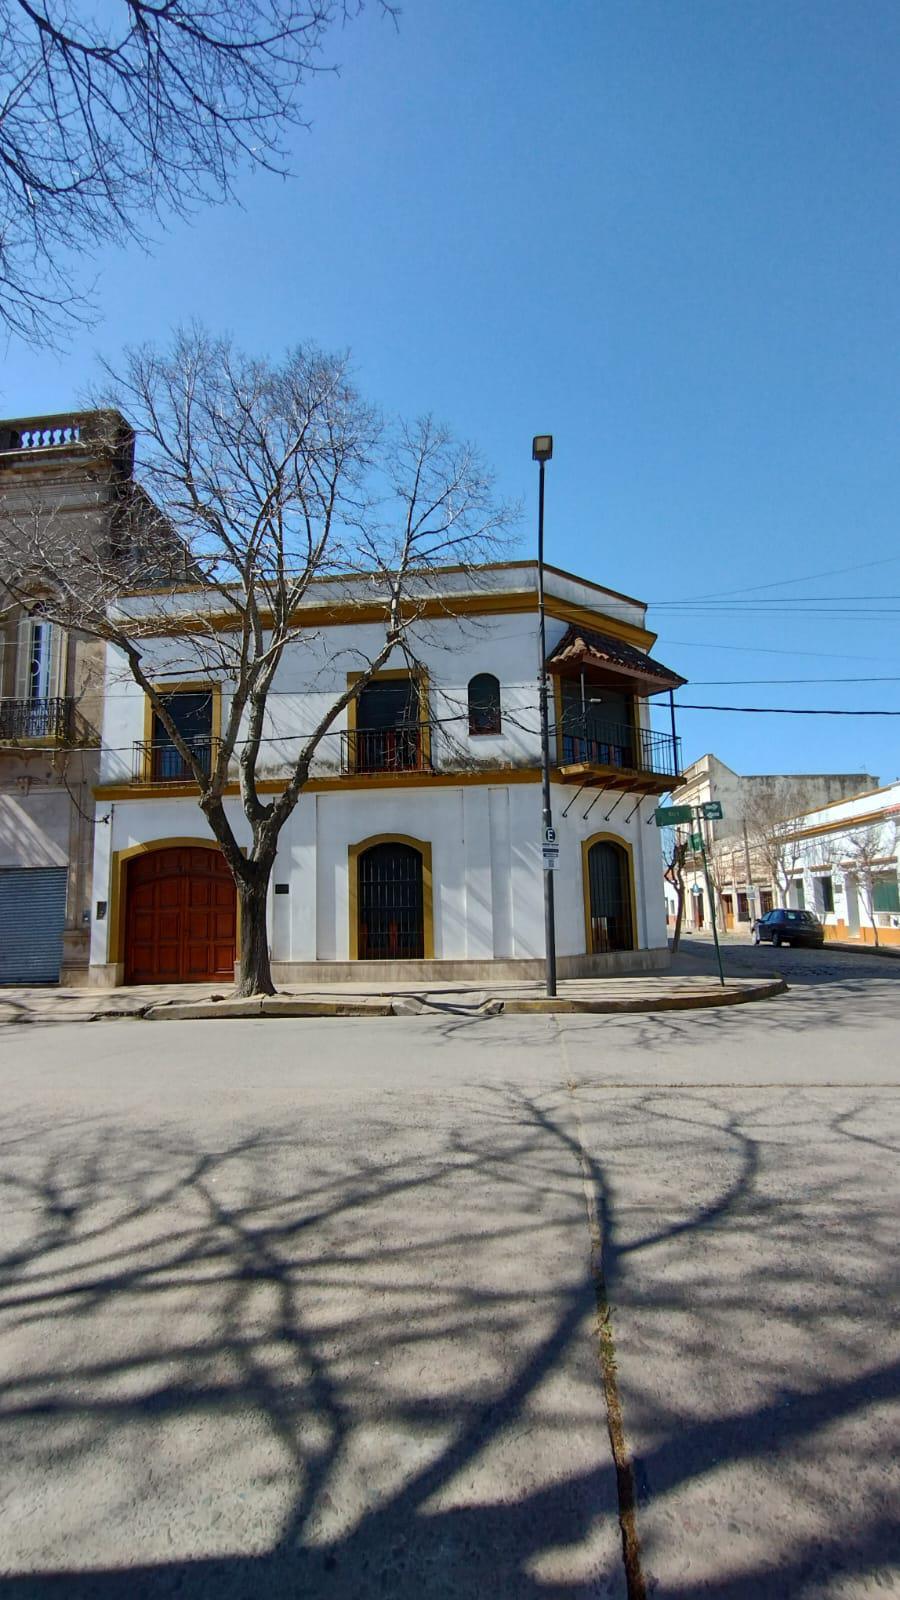 Casa de Raúl Alfonsín